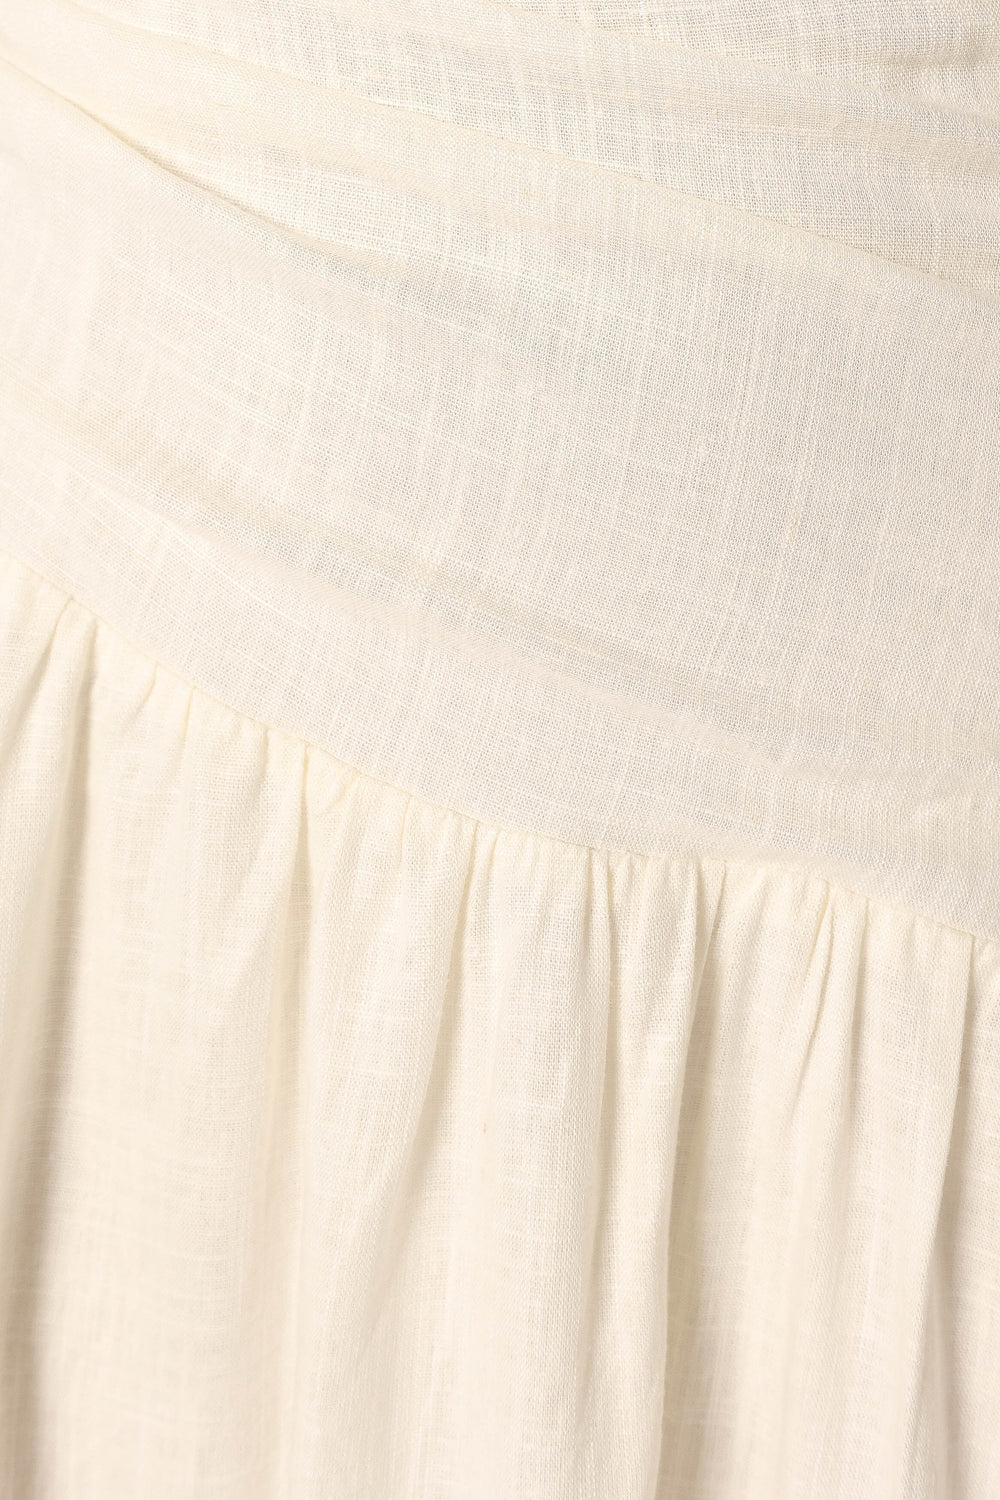 DRESSES @Palmer Midi Dress - White